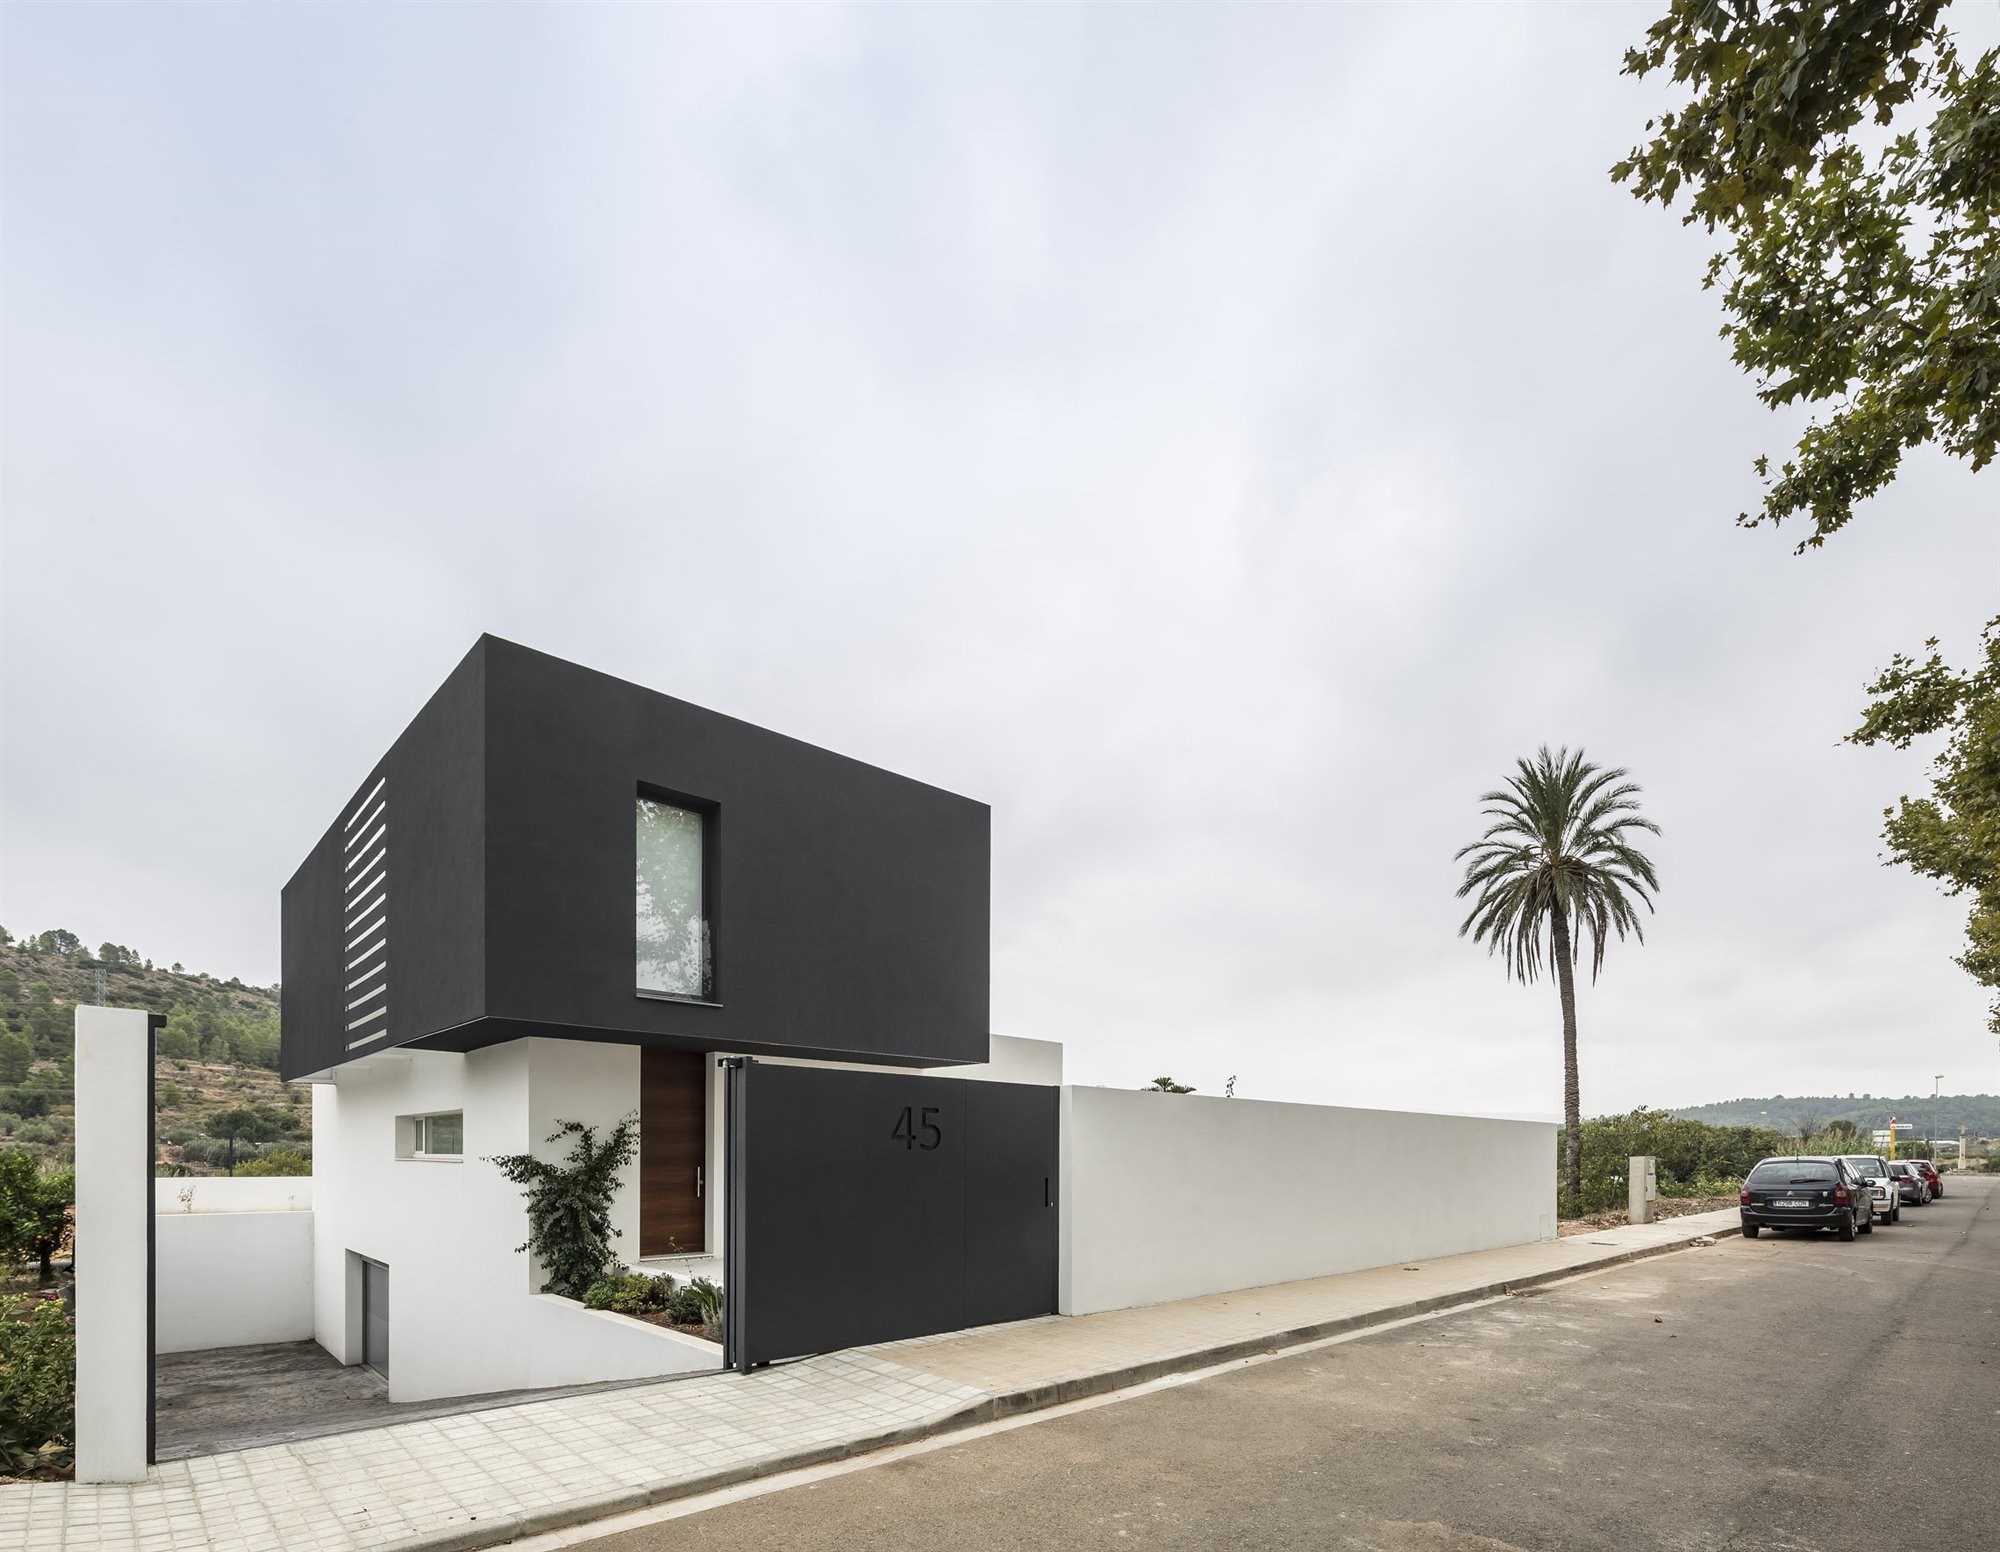 Casa moderna con fachada en blanco y negro en Valencia vista lateral